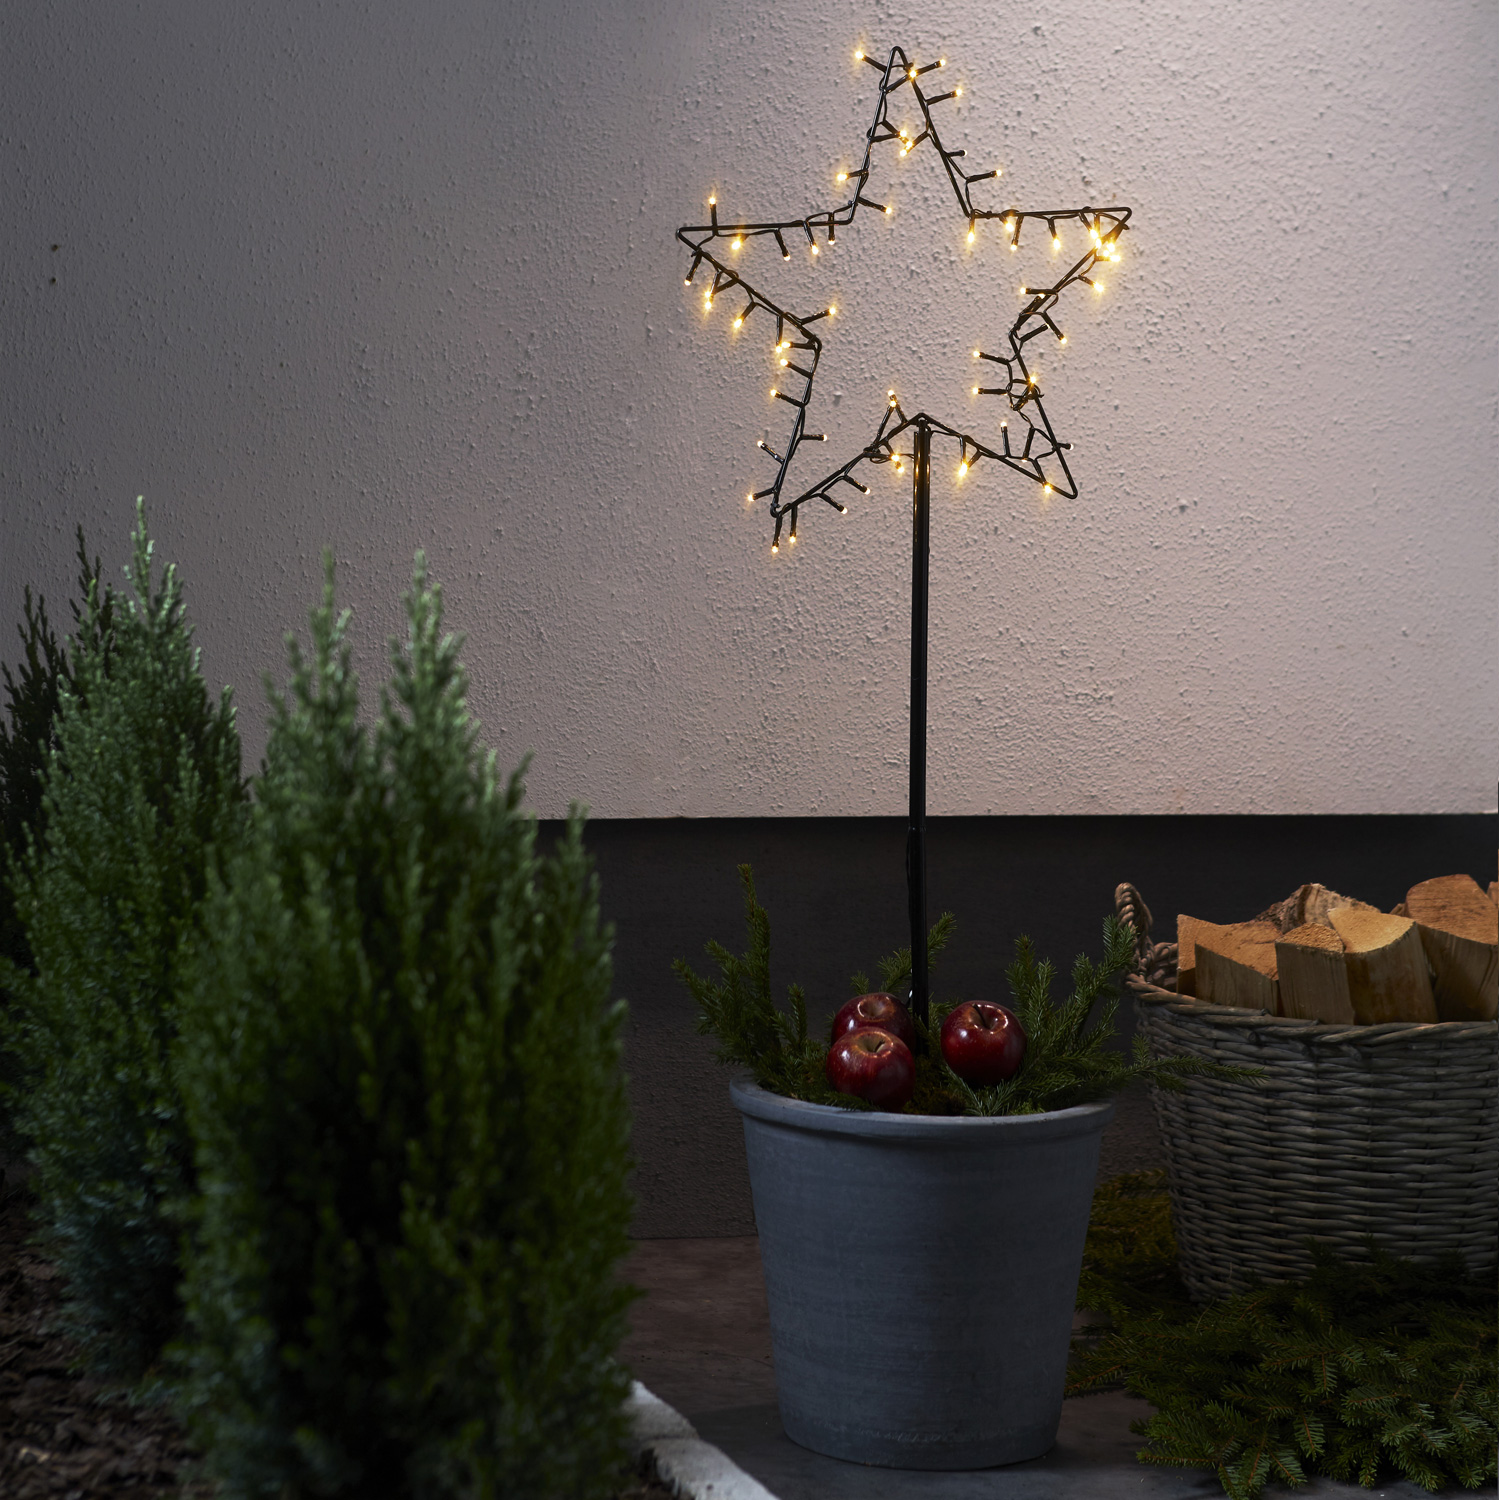 LED Lichterstern Spiky- stehend - H: 92cm - 60 warmweiße LED - Timer - Batterie - Outdoor - schwarz